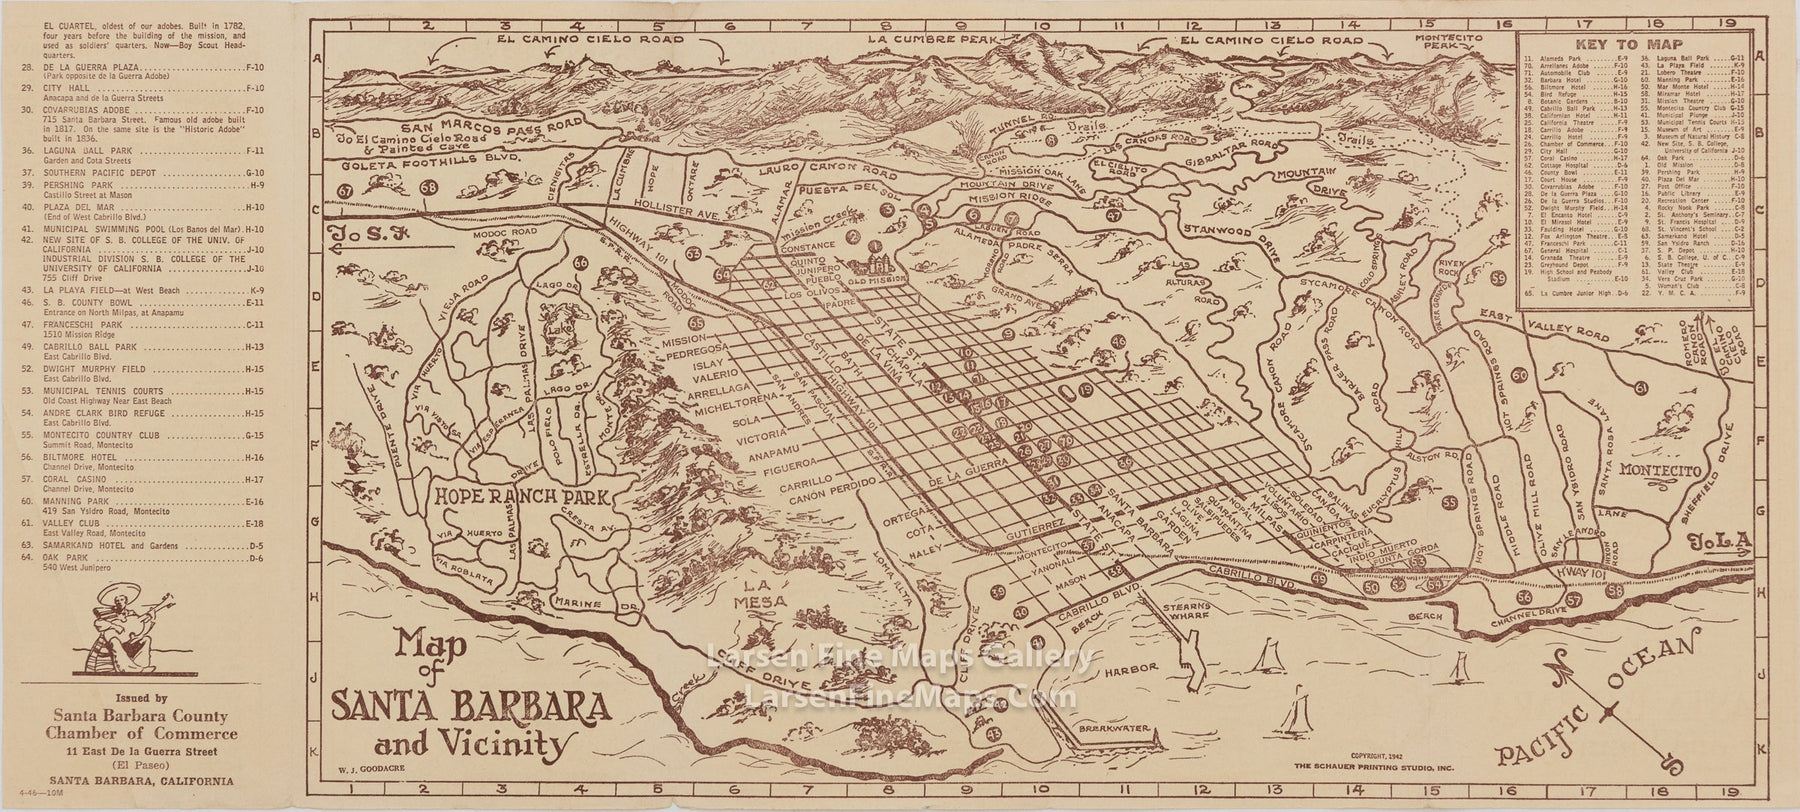 Map of Santa Barbara and Vicinity